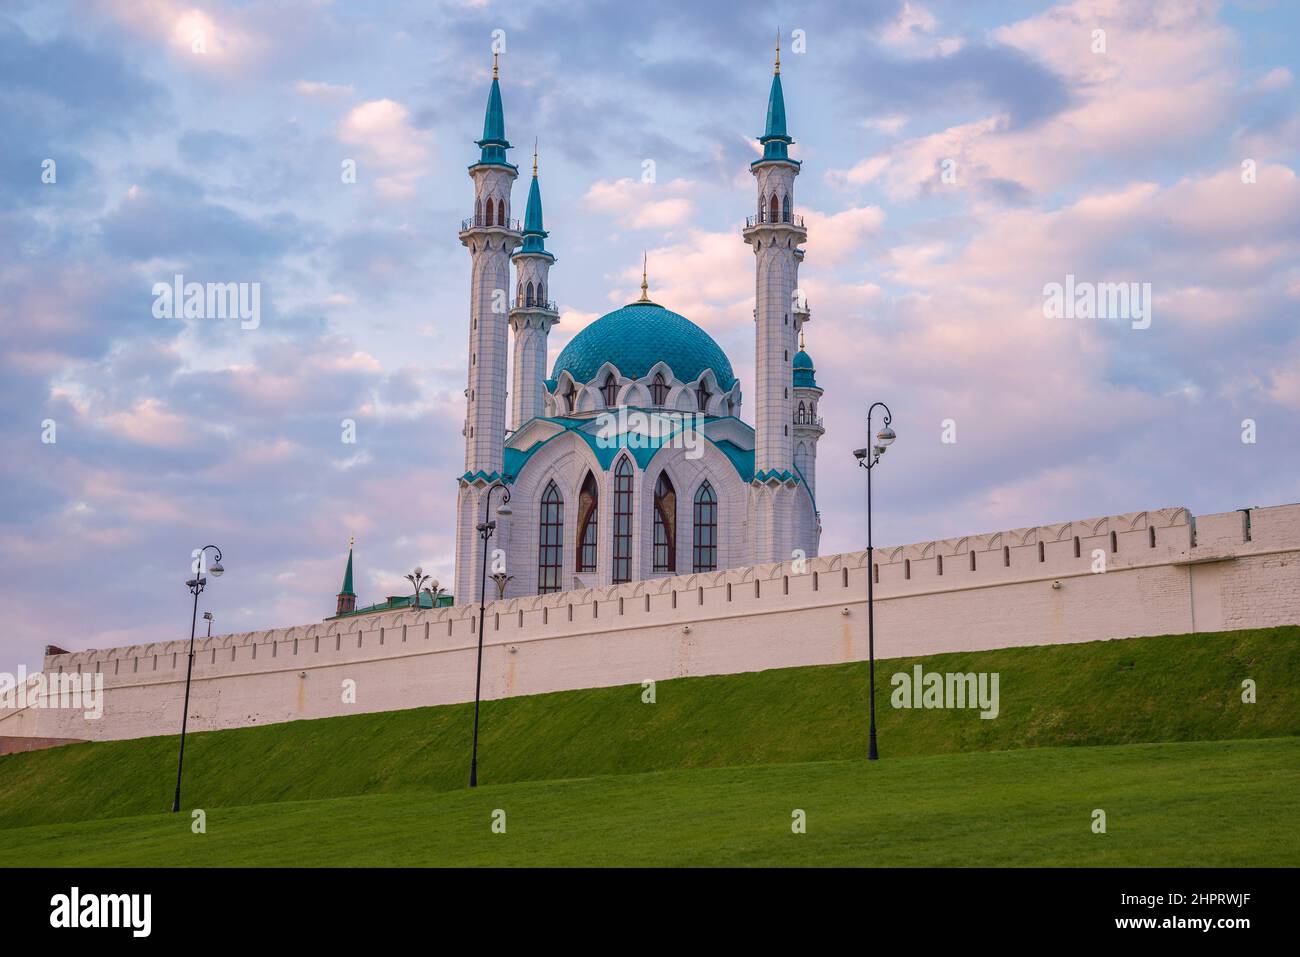 Mosquée Kul-Sharif au Kremlin de Kazan en avril soir. Kazan, Russie Banque D'Images